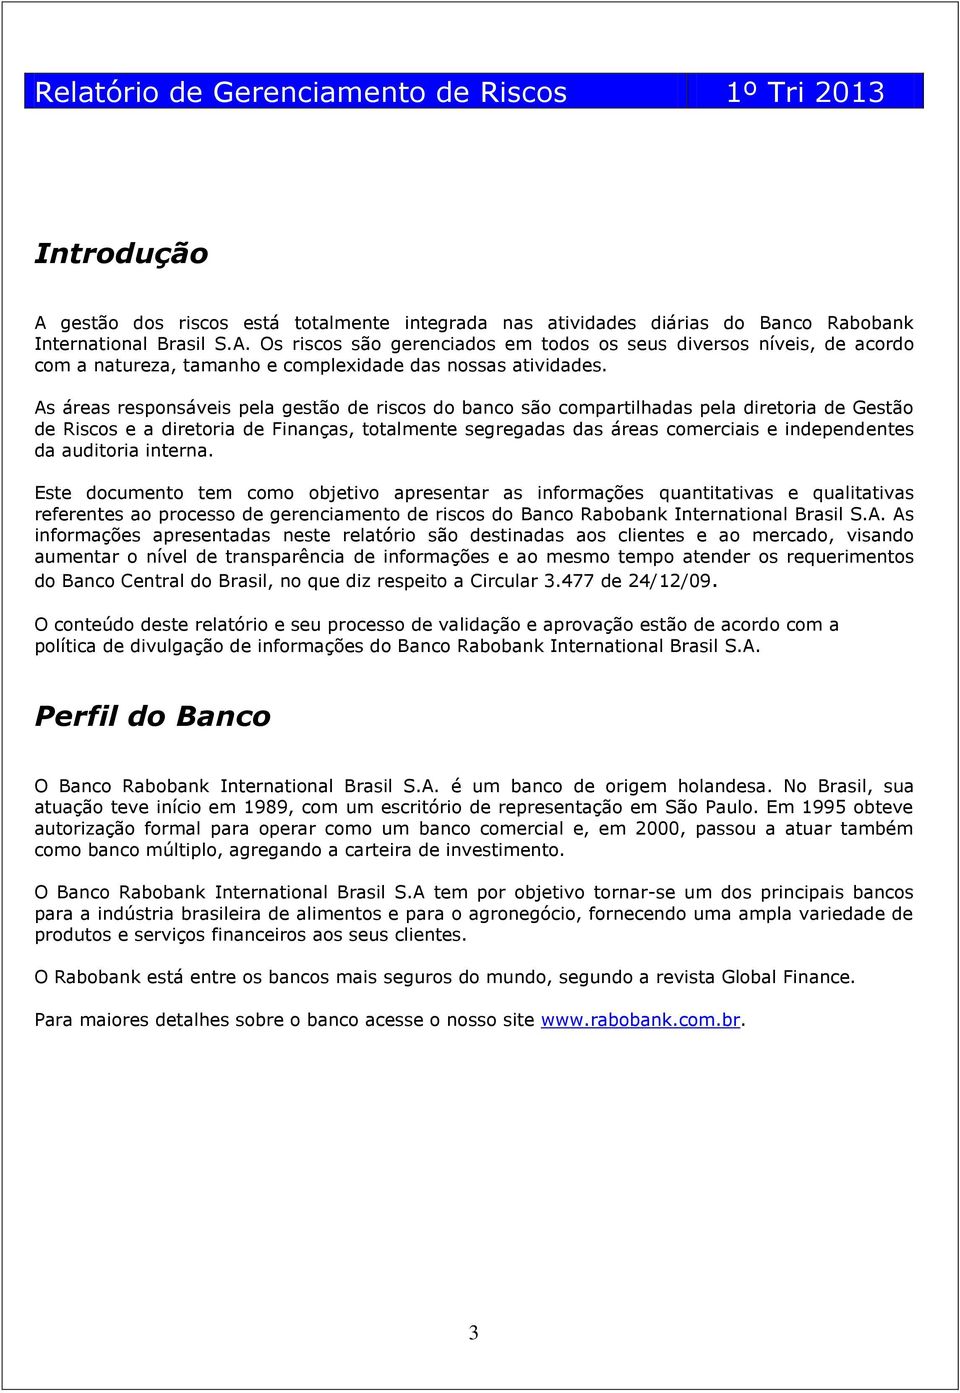 auditoria interna. Este documento tem como objetivo apresentar as informações quantitativas e qualitativas referentes ao processo de gerenciamento de riscos do Banco Rabobank International Brasil S.A.